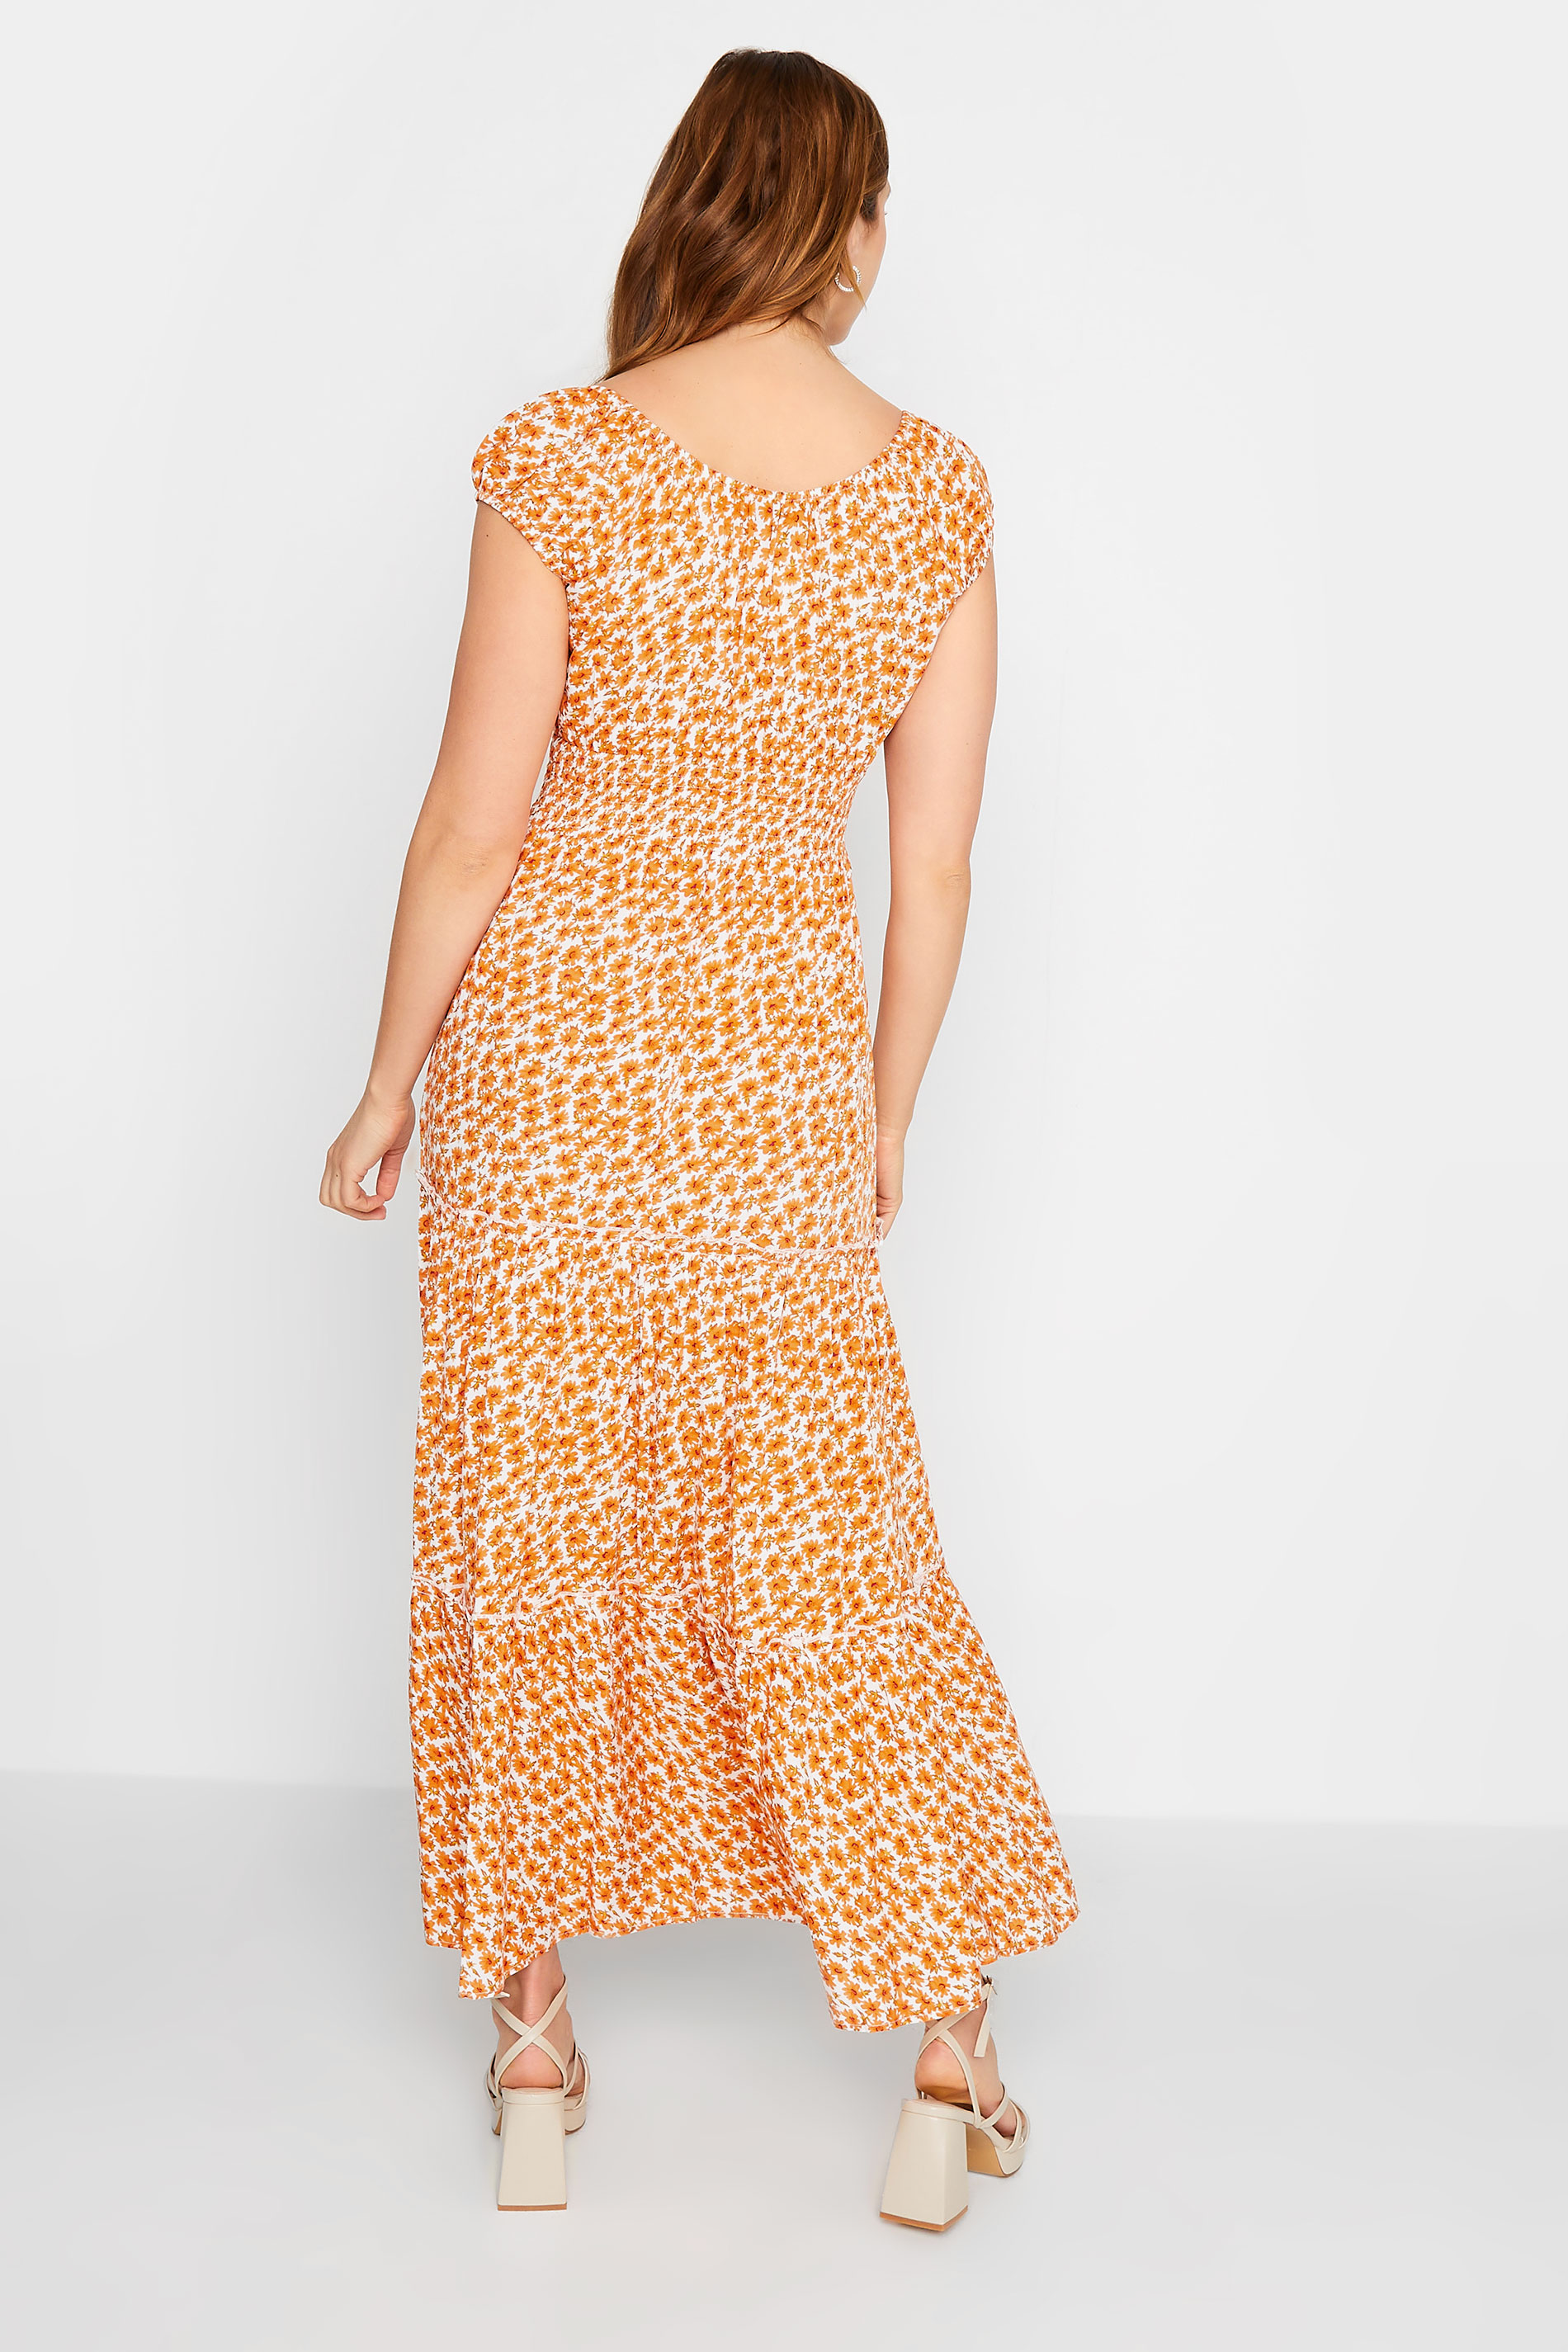 LTS Tall Women's Yellow Sunflower Print Maxi Dress | Long Tall Sally 3